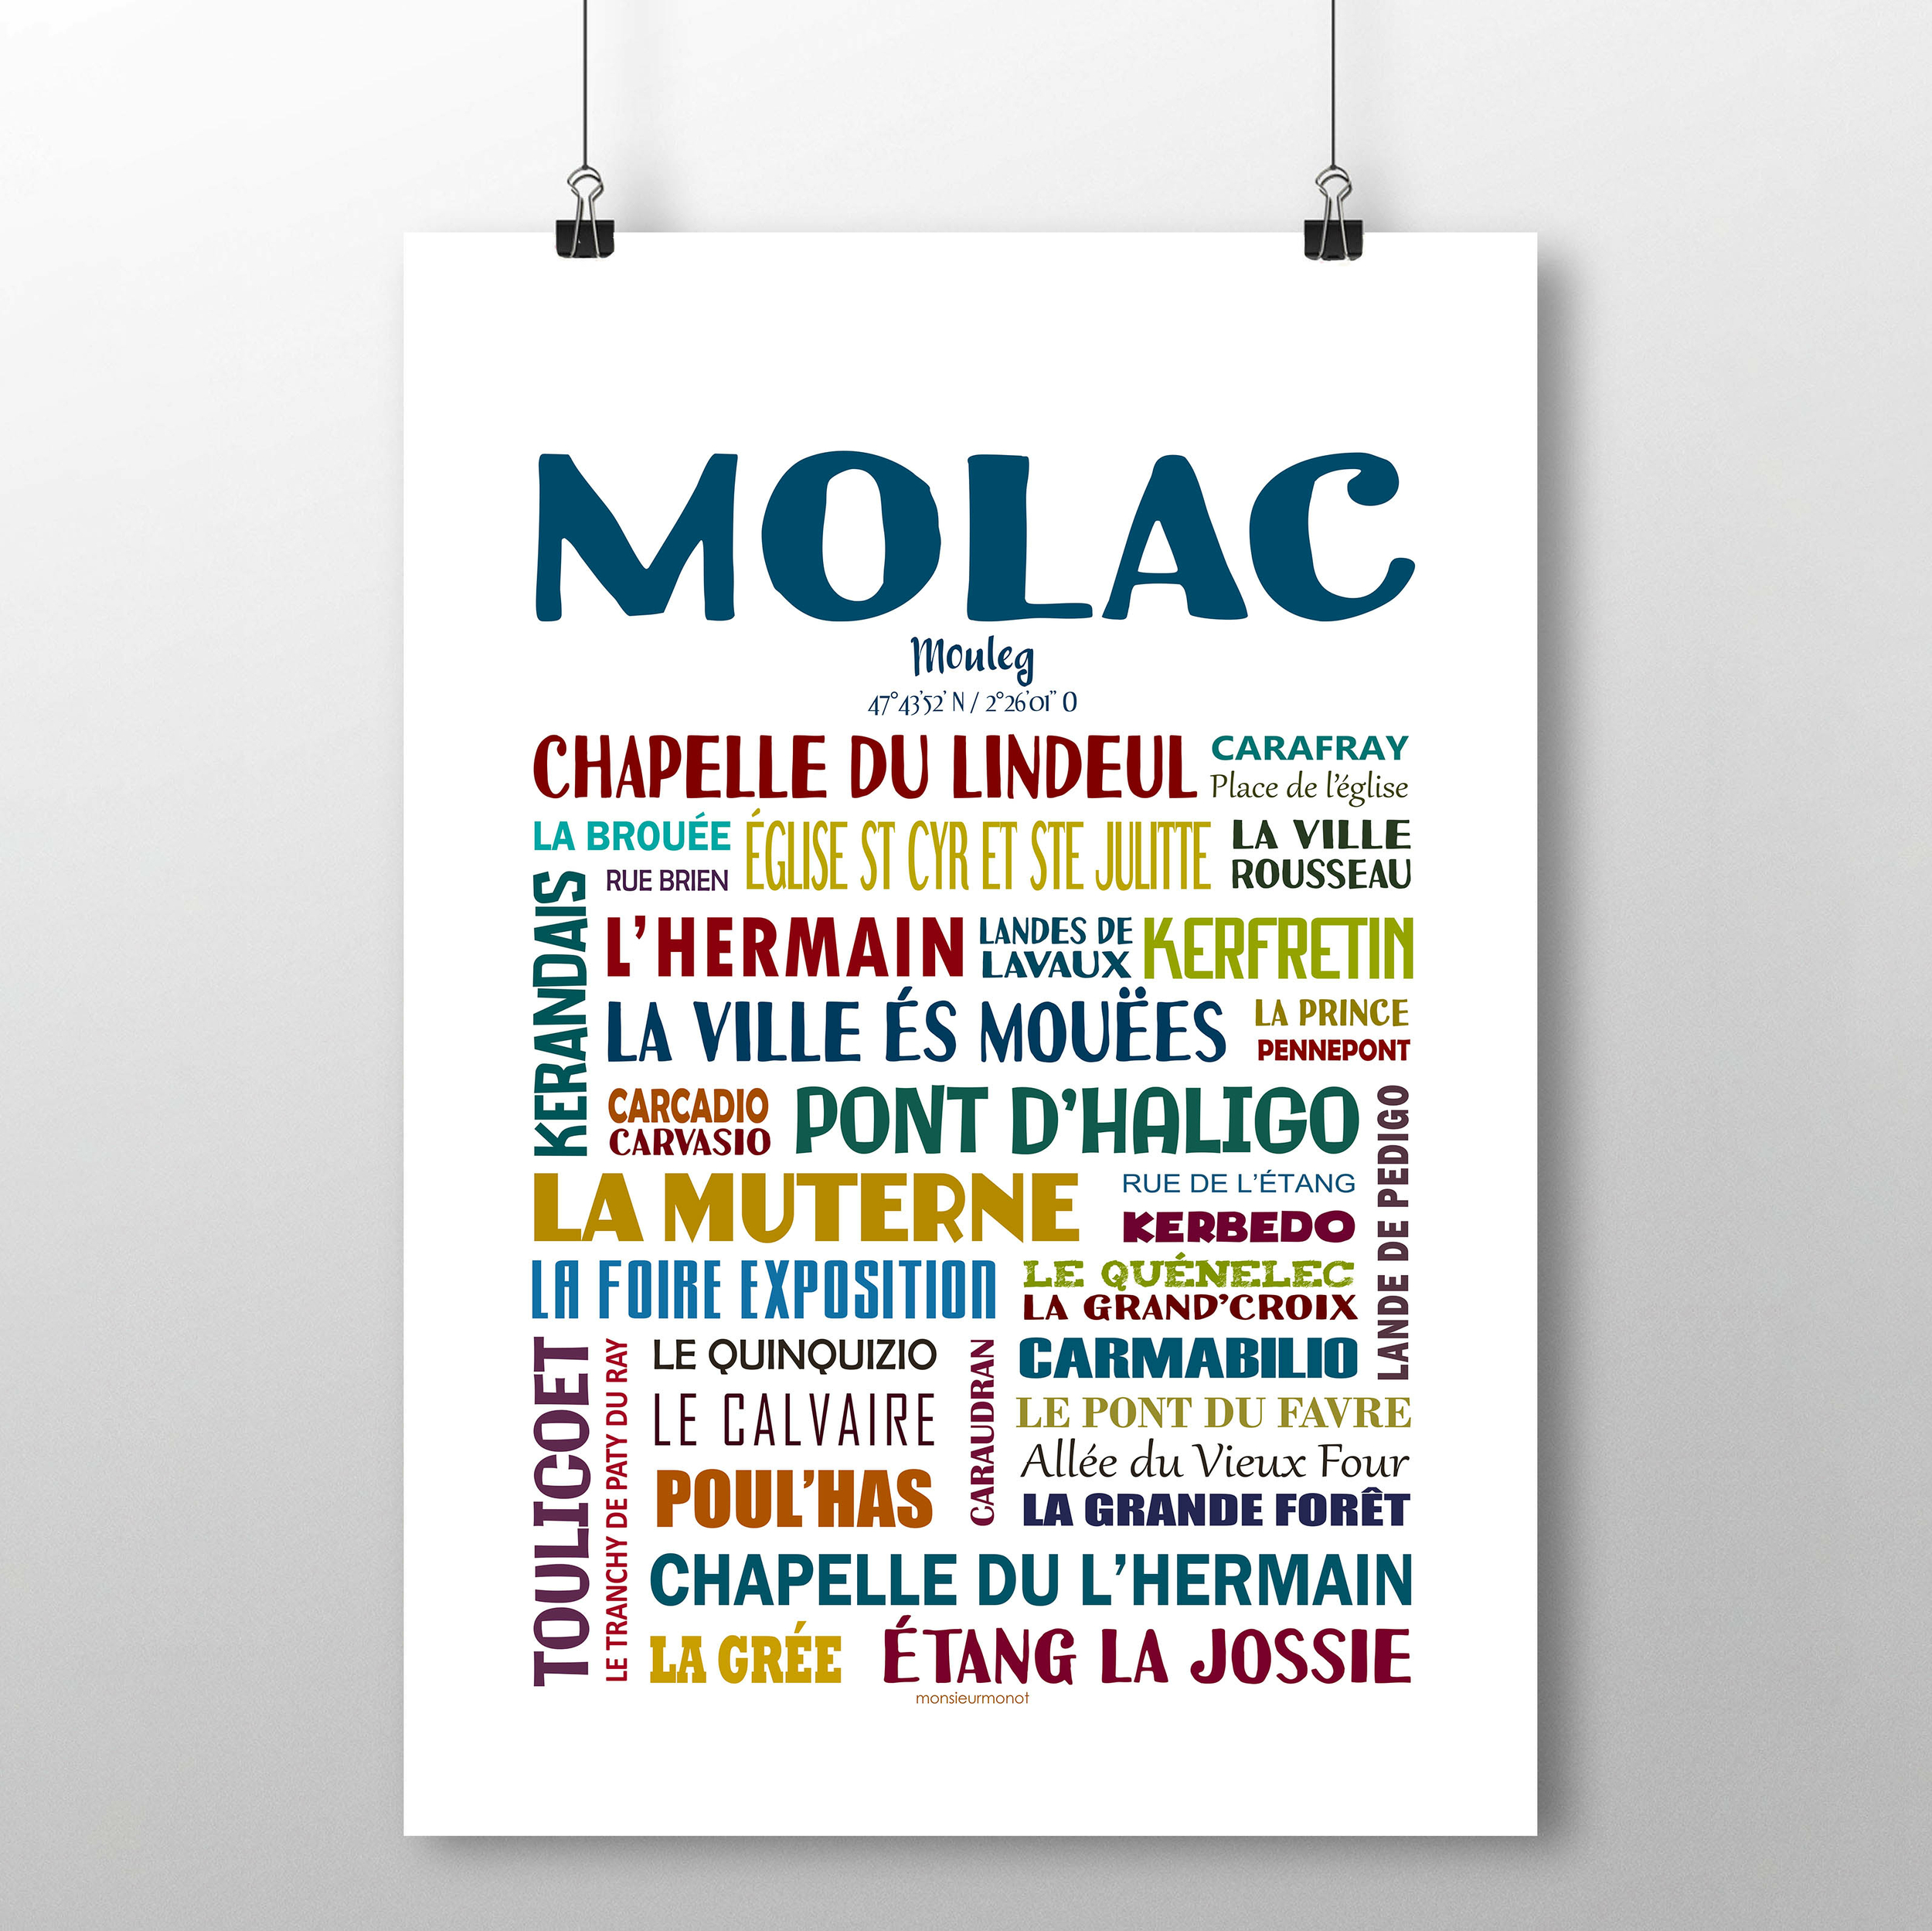 Molac 2